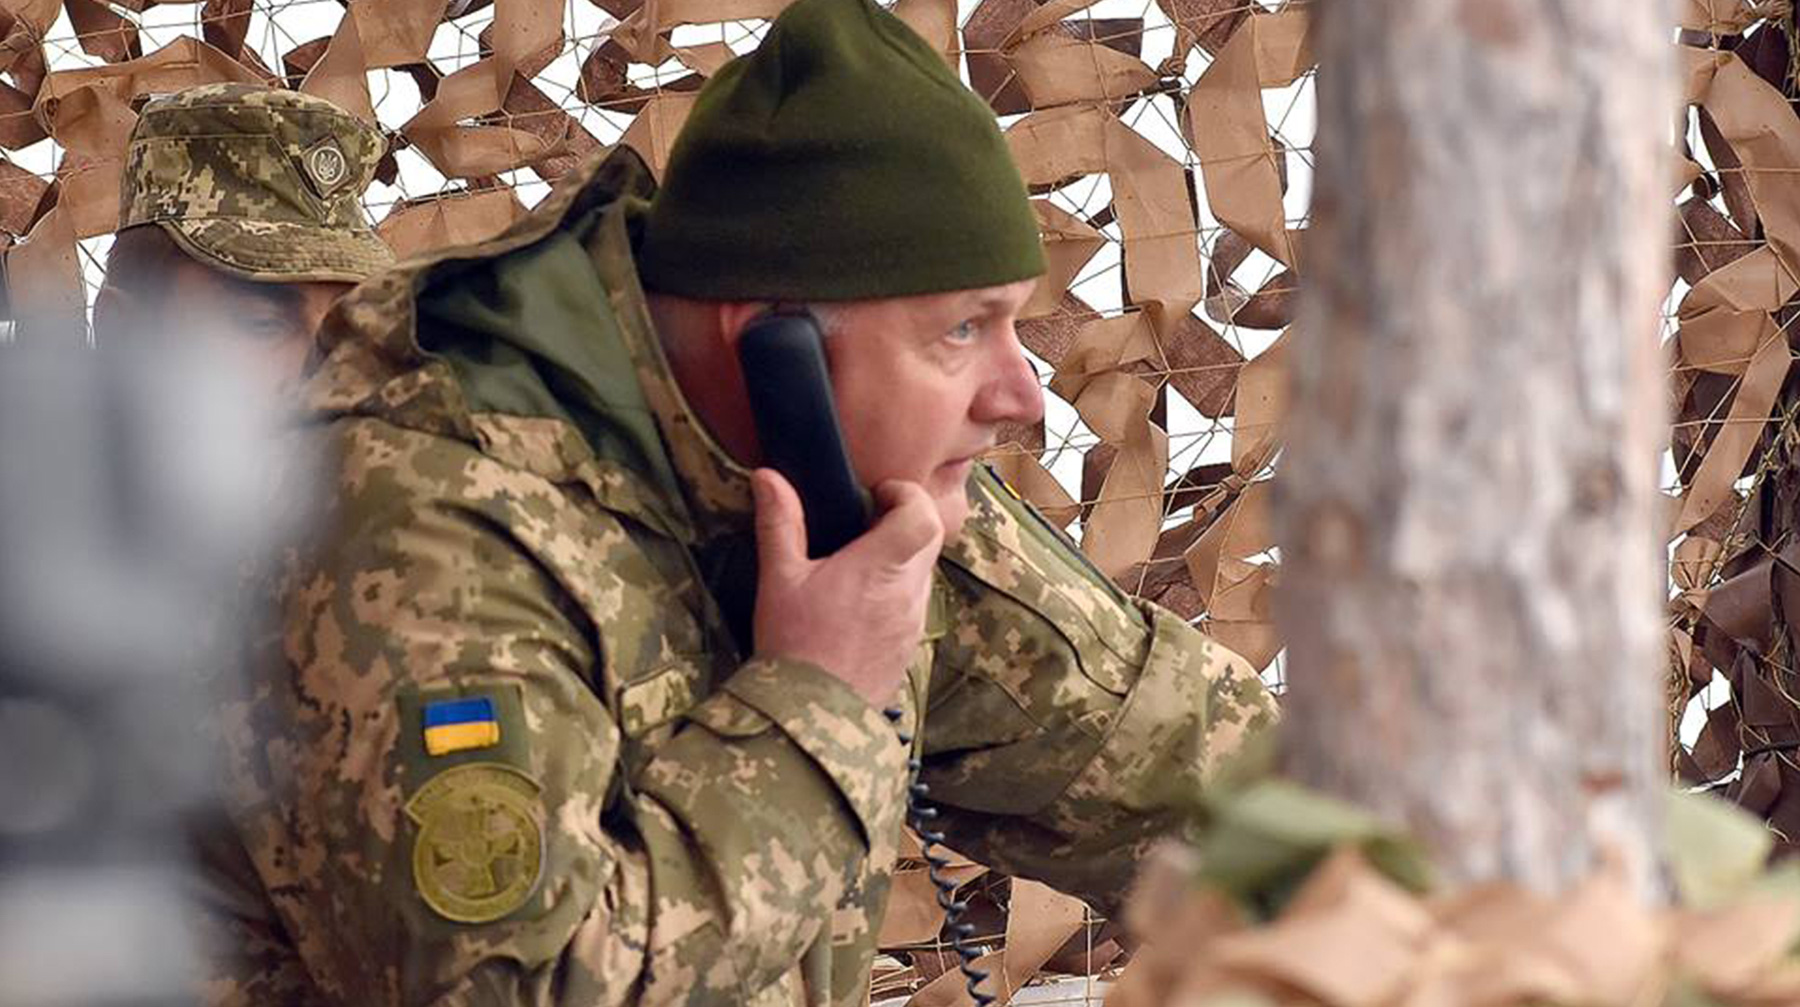 Территория отделяла войска самопровозглашенных республик ДНР и ЛНР от украинских войск undefined